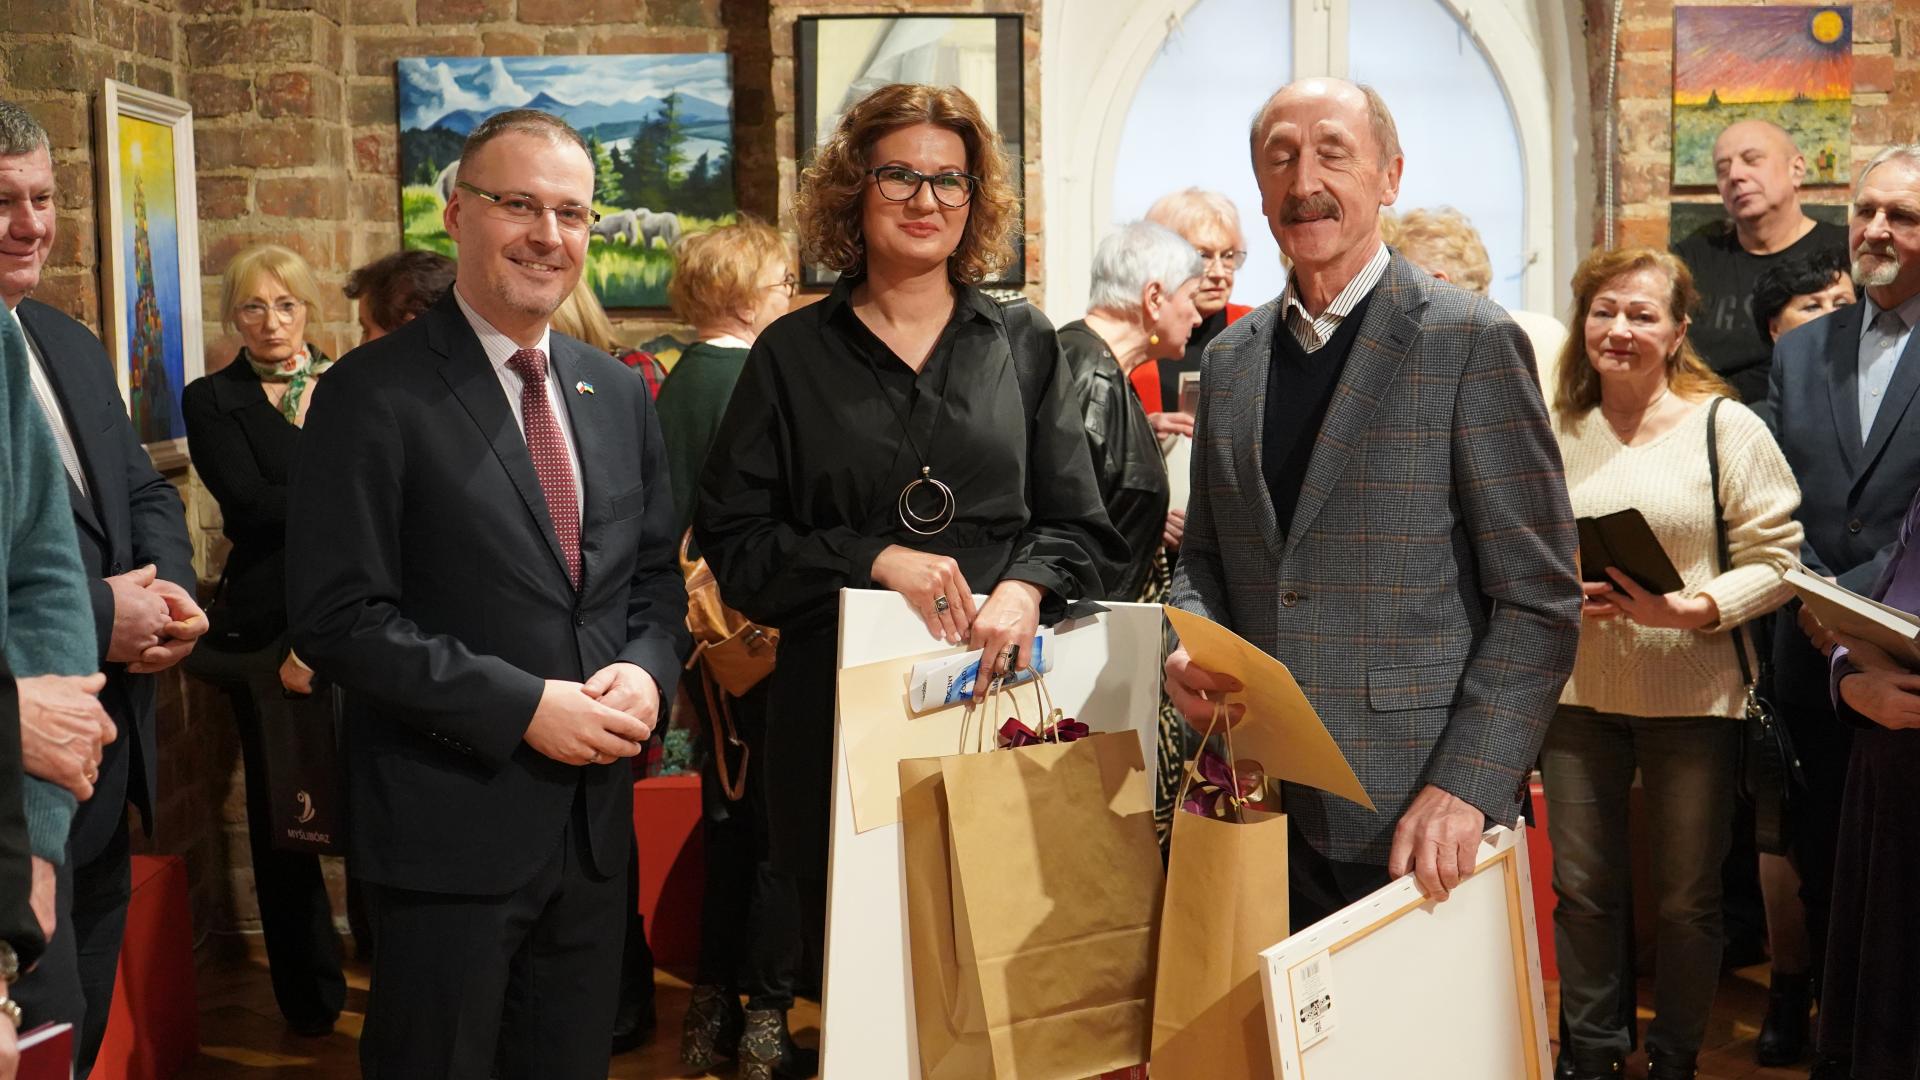 Burmistrz Myśliborza pozuje do zdjęcia z laureatami jego nagrody